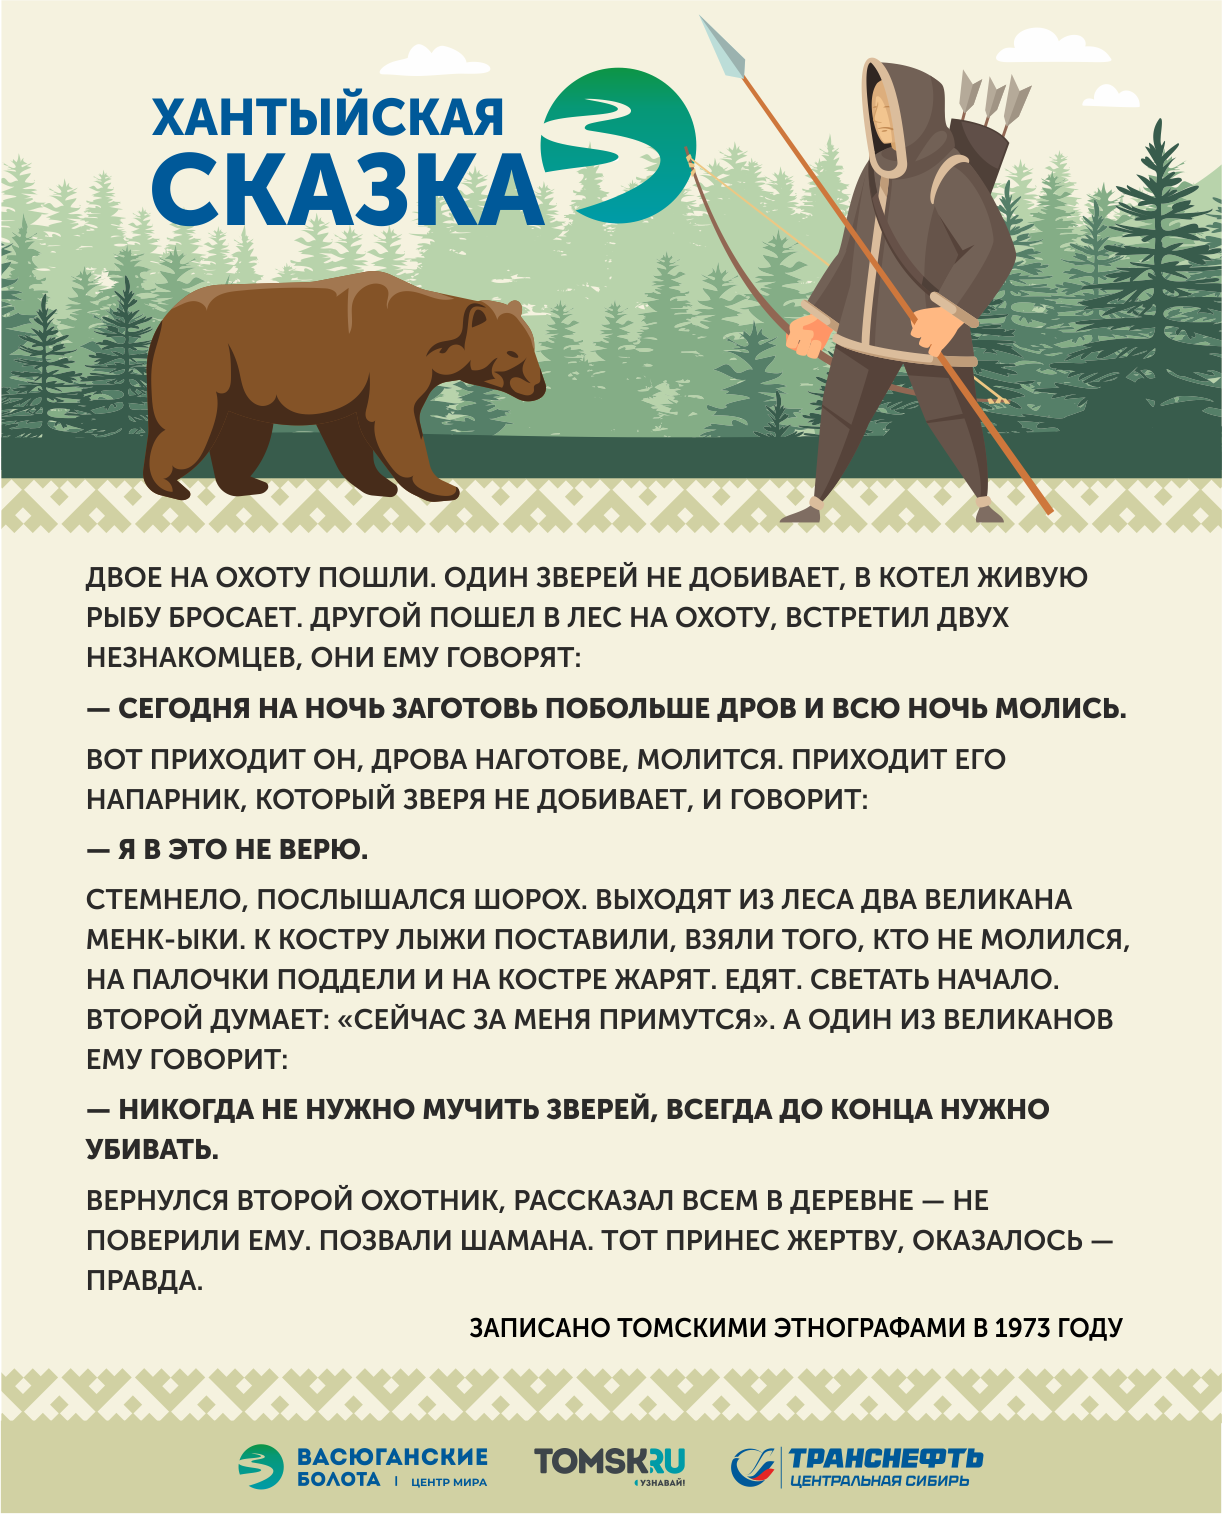 «Заповедники» на Васюгане: как ценили природу коренные народы Сибири